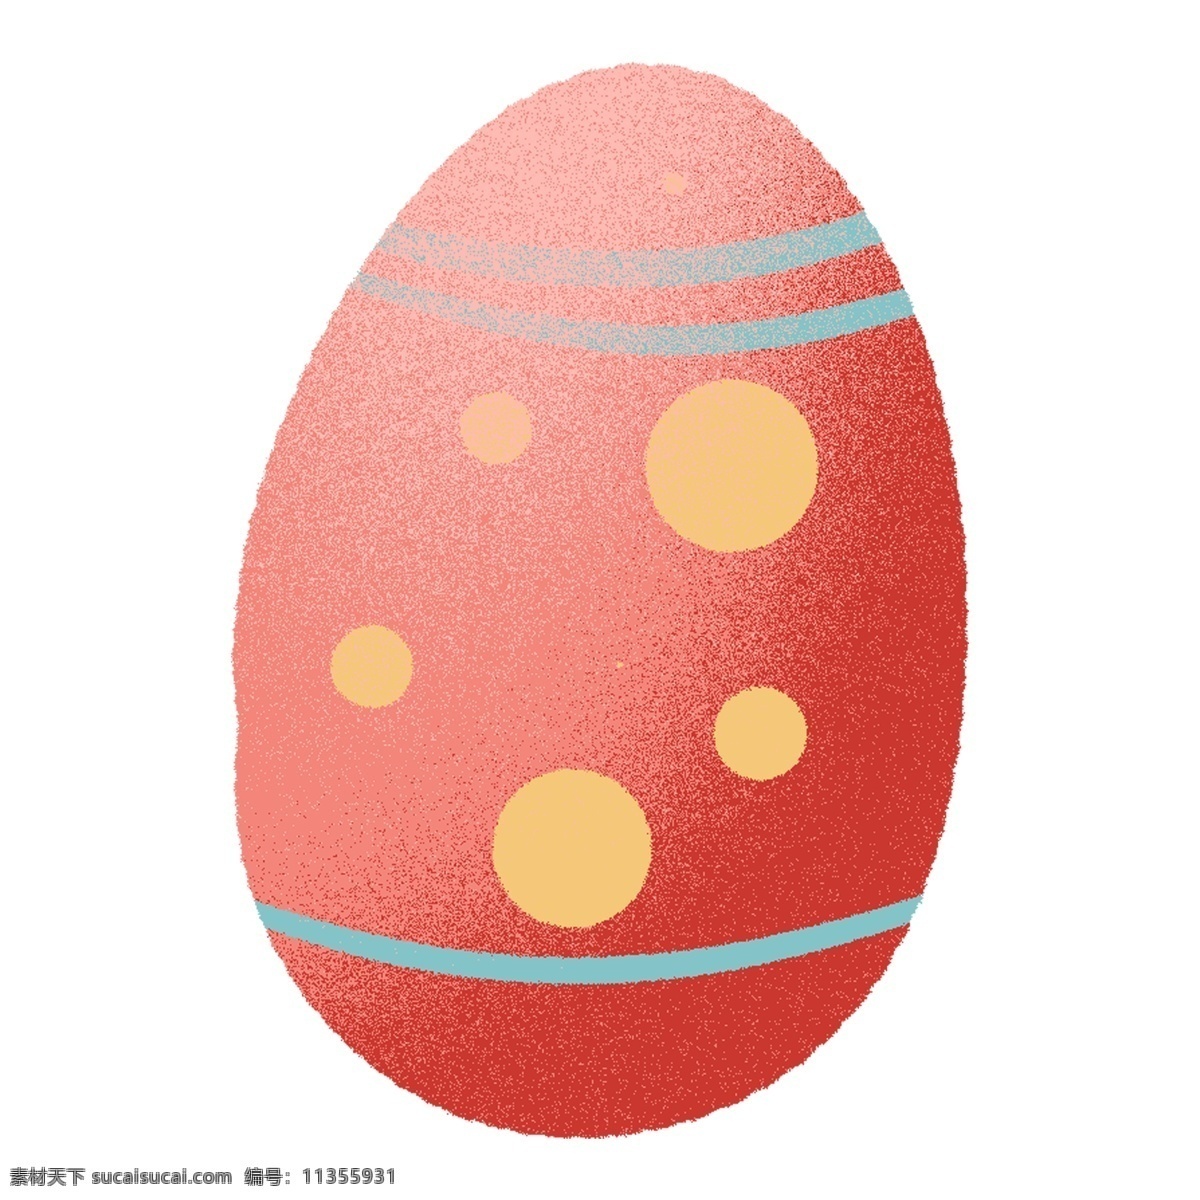 手绘 卡通 节日 彩蛋 元素 复活节 花纹 美丽 纹理 可爱 鸡蛋